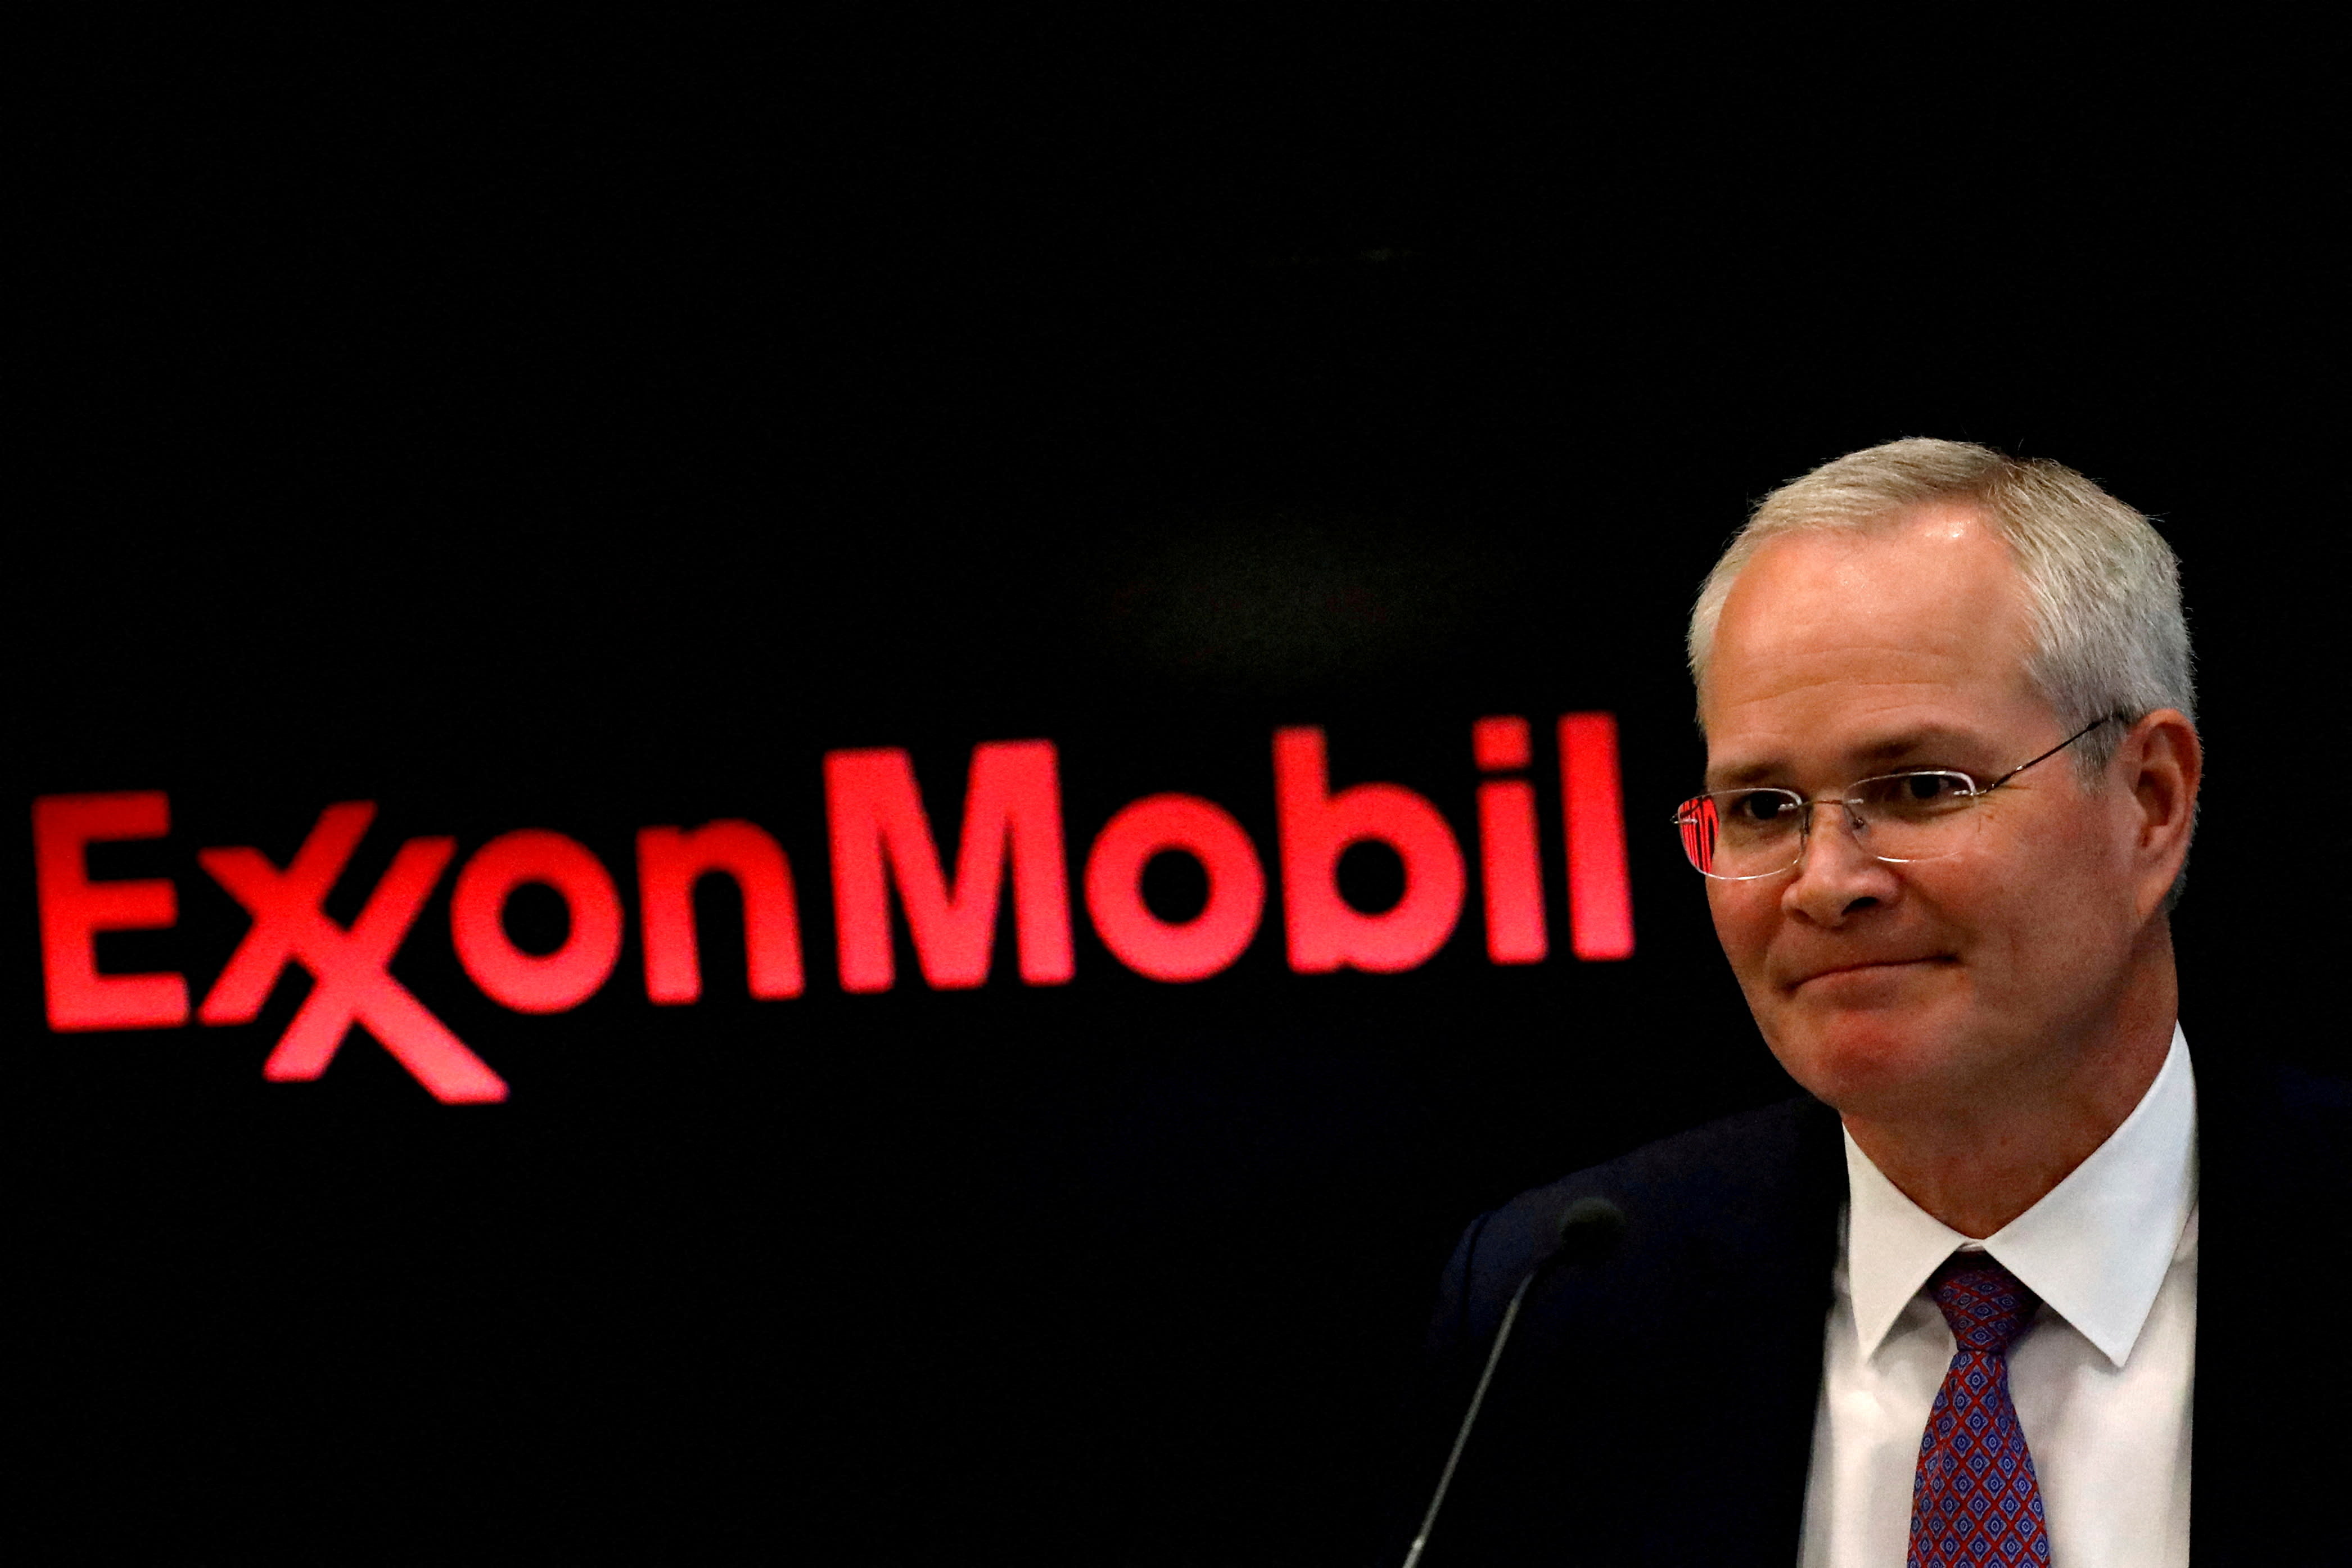 Exxon erwartet durch Kostensenkungen eine deutliche Gewinnsteigerung und wird die Aktienrückkäufe nach Abschluss des Pioneer-Deals verstärken